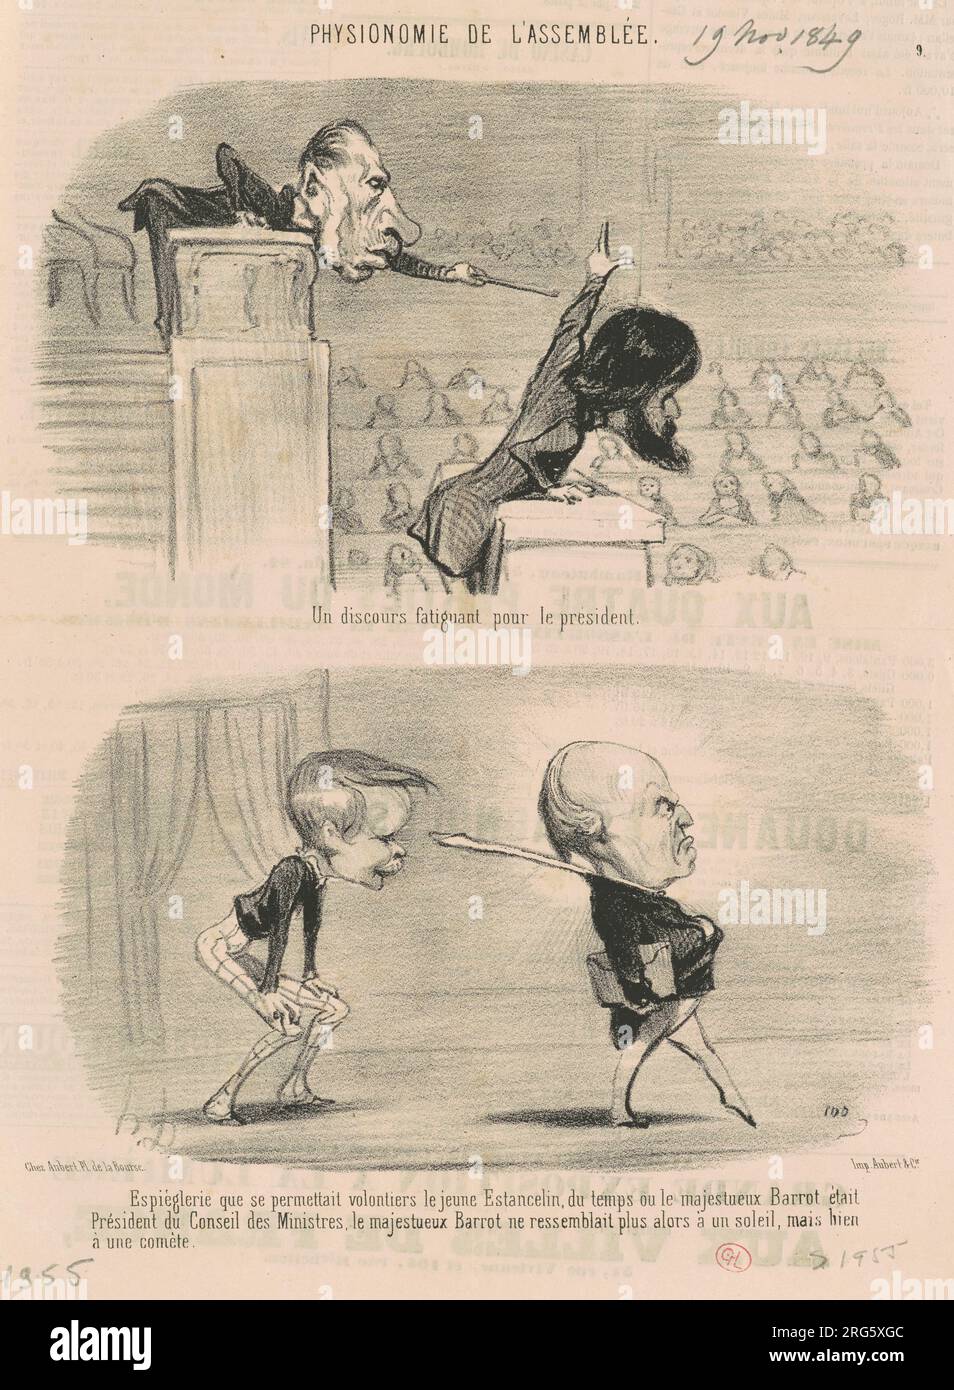 Un discours fatigant pour le président 19th century by Honoré Daumier Stock Photo